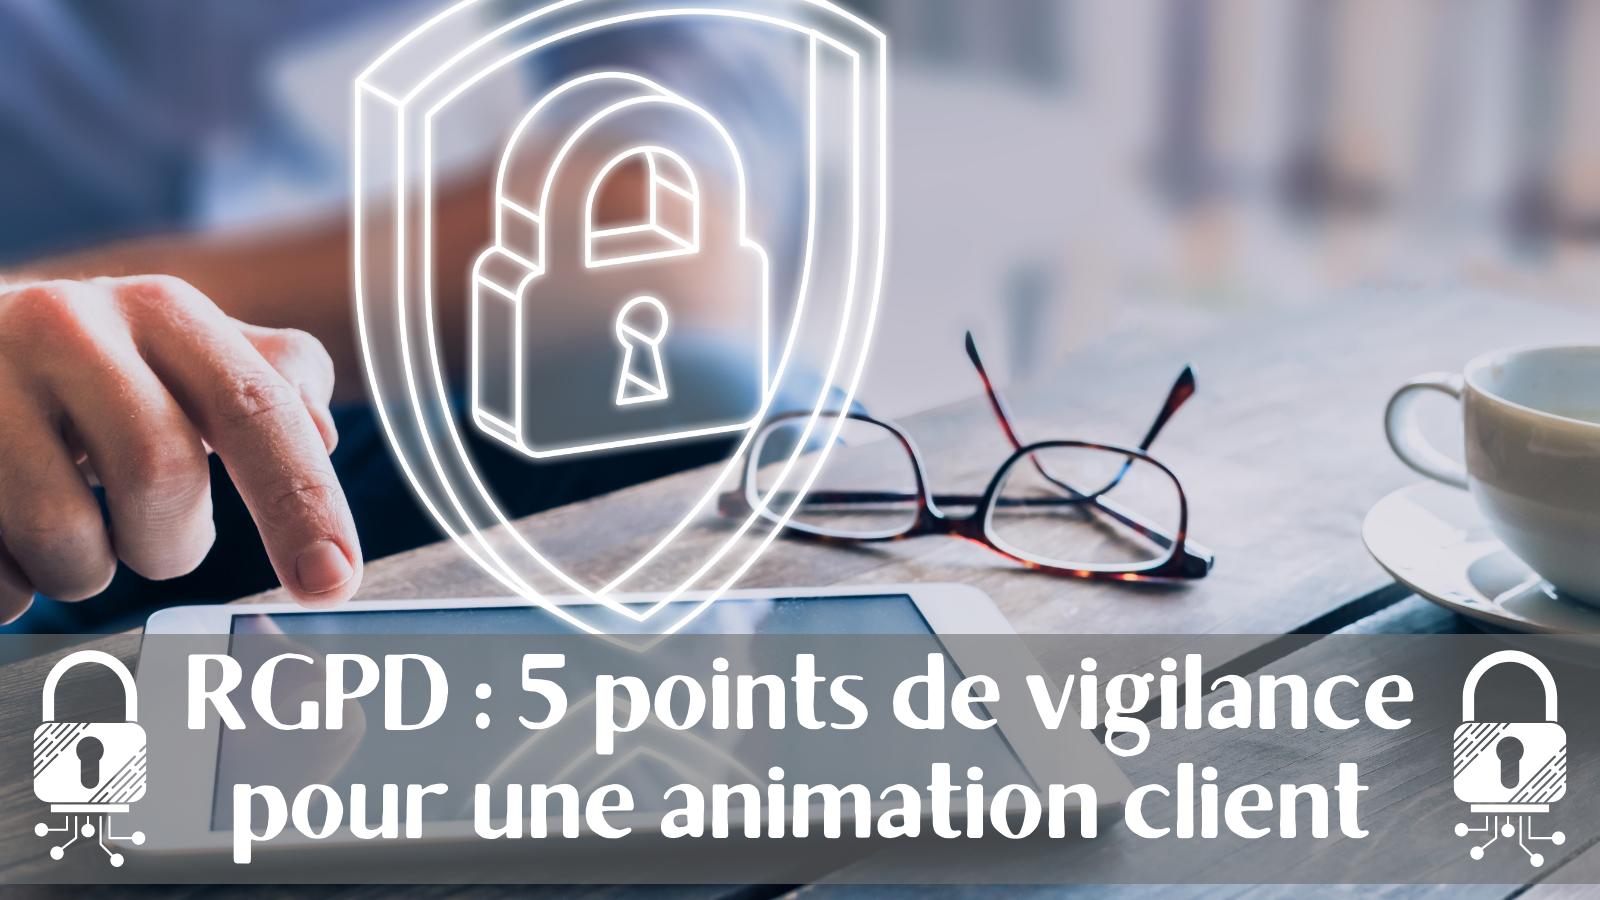 RGPD : 5 points de vigilance pour une bonne animation client